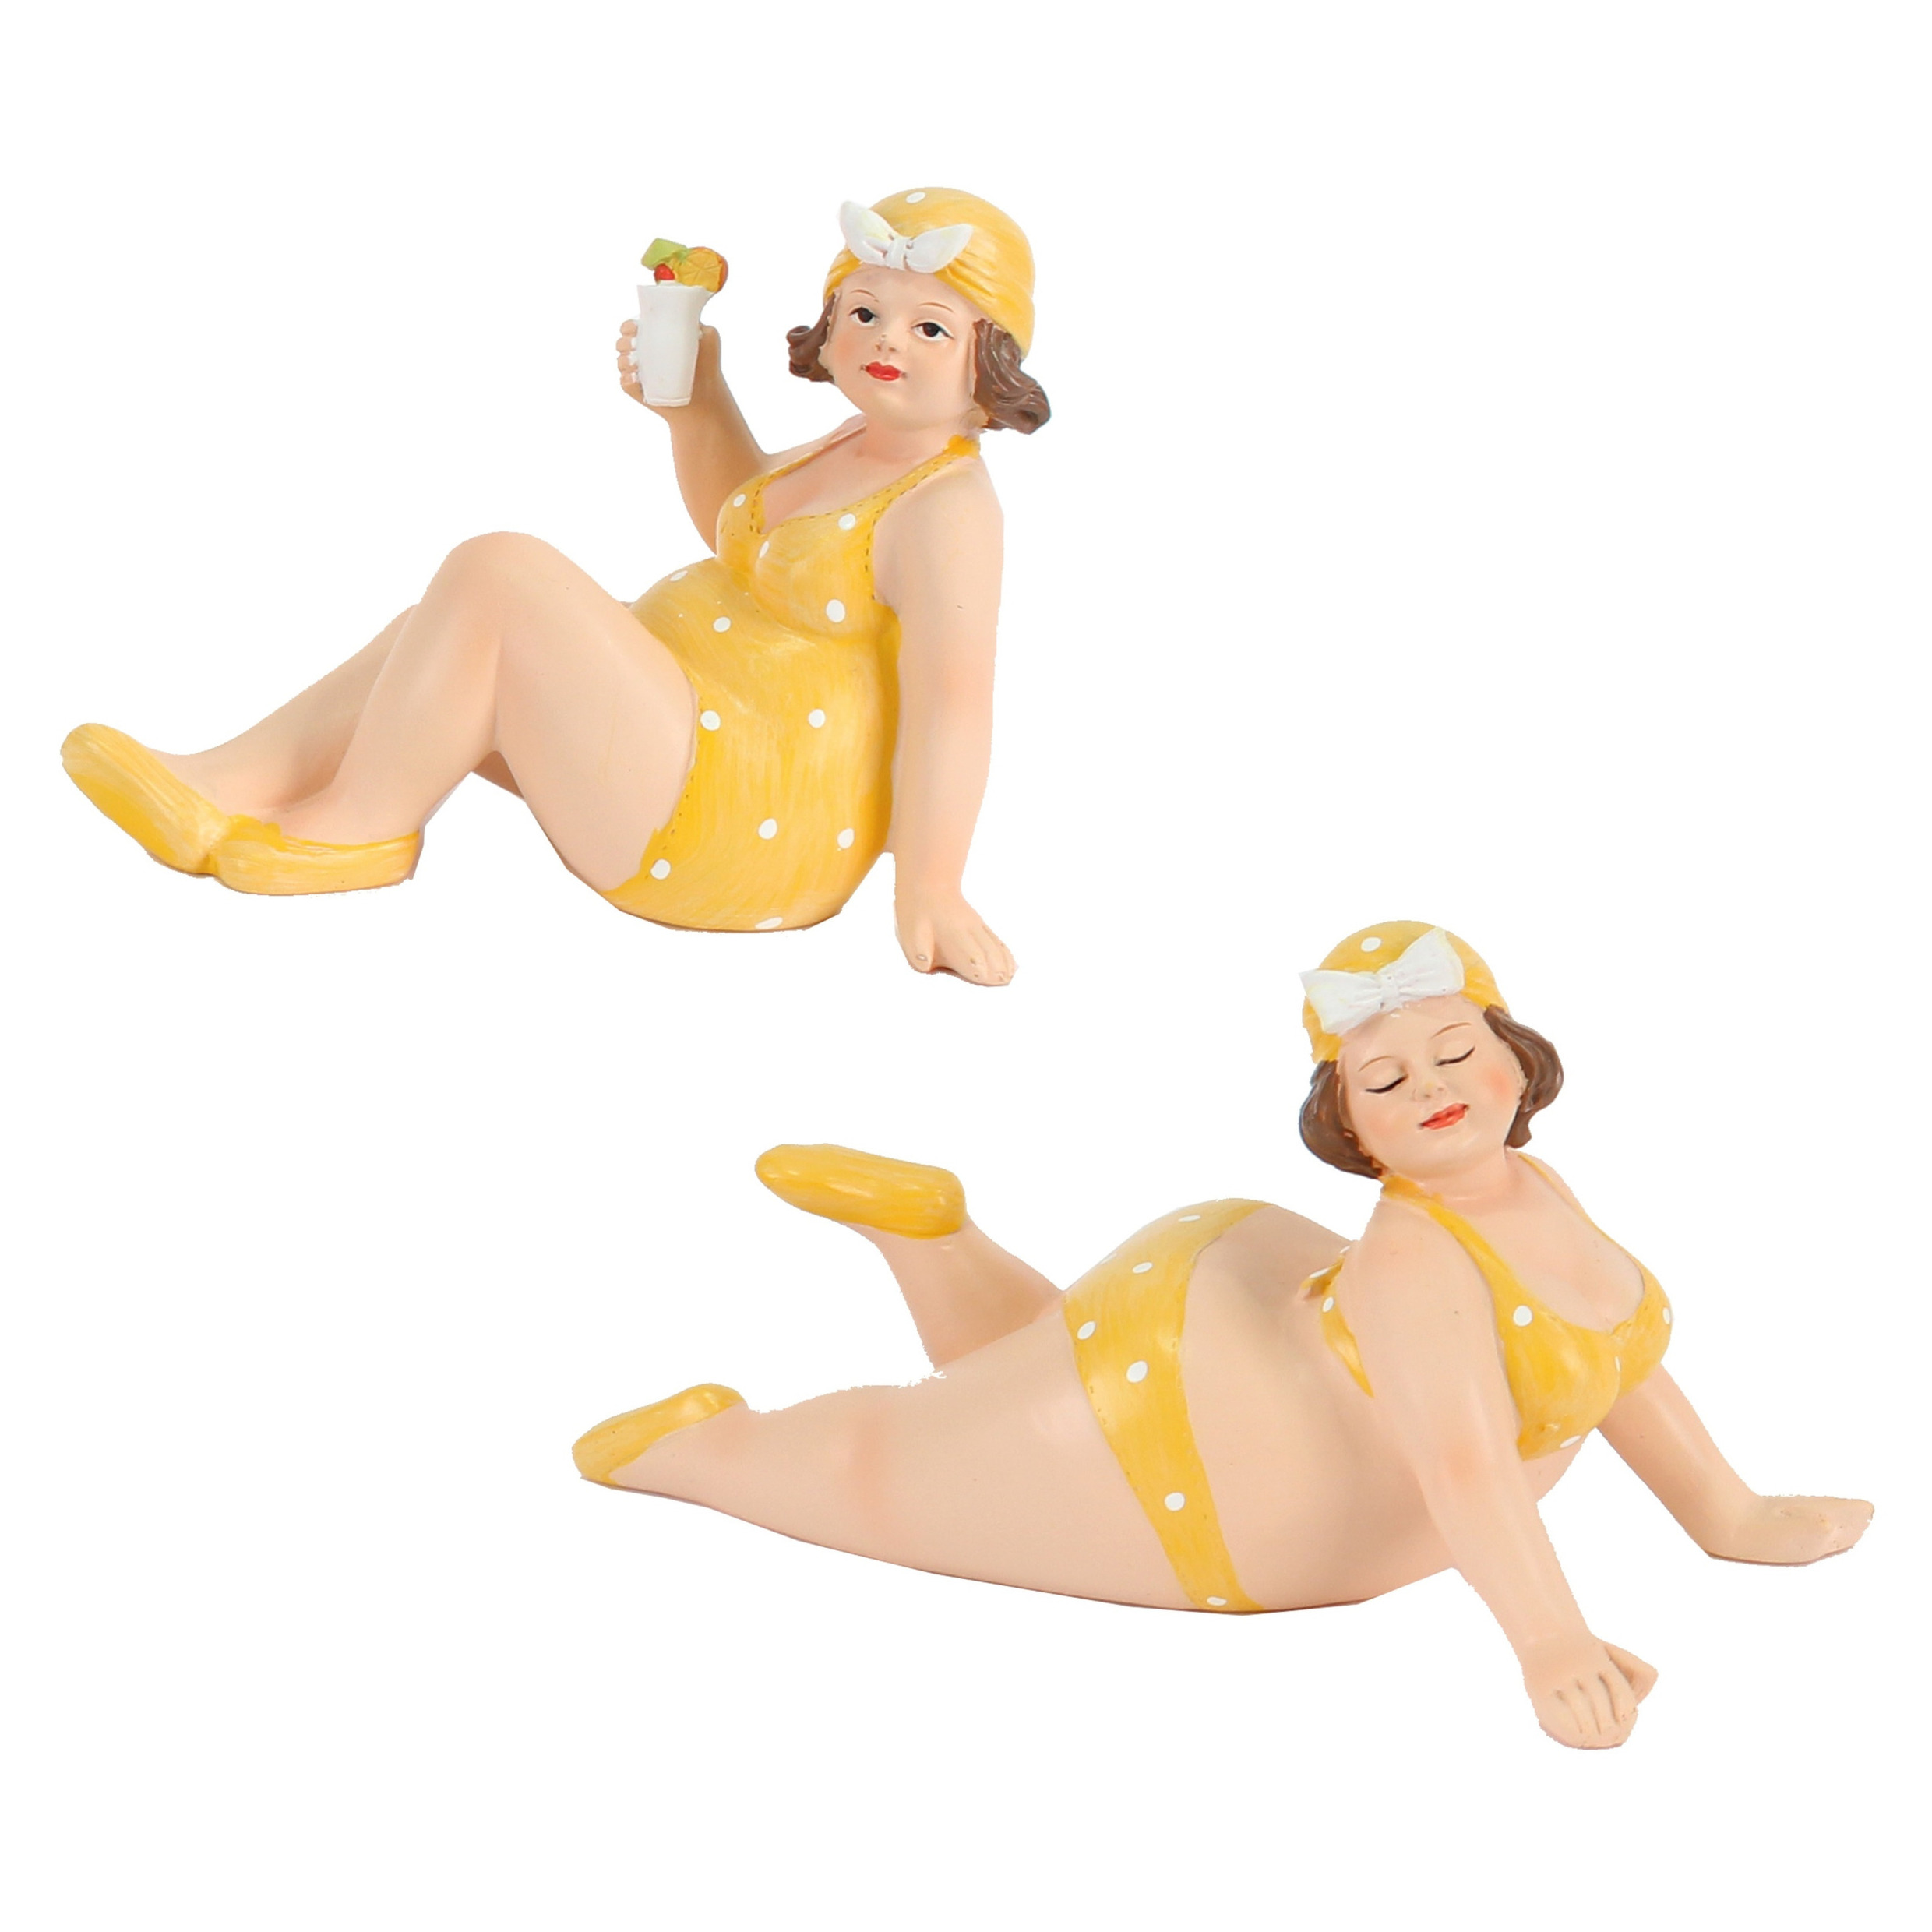 Woonkamer decoratie beeldjes set van 2 dikke dames geel badpak 17 cm